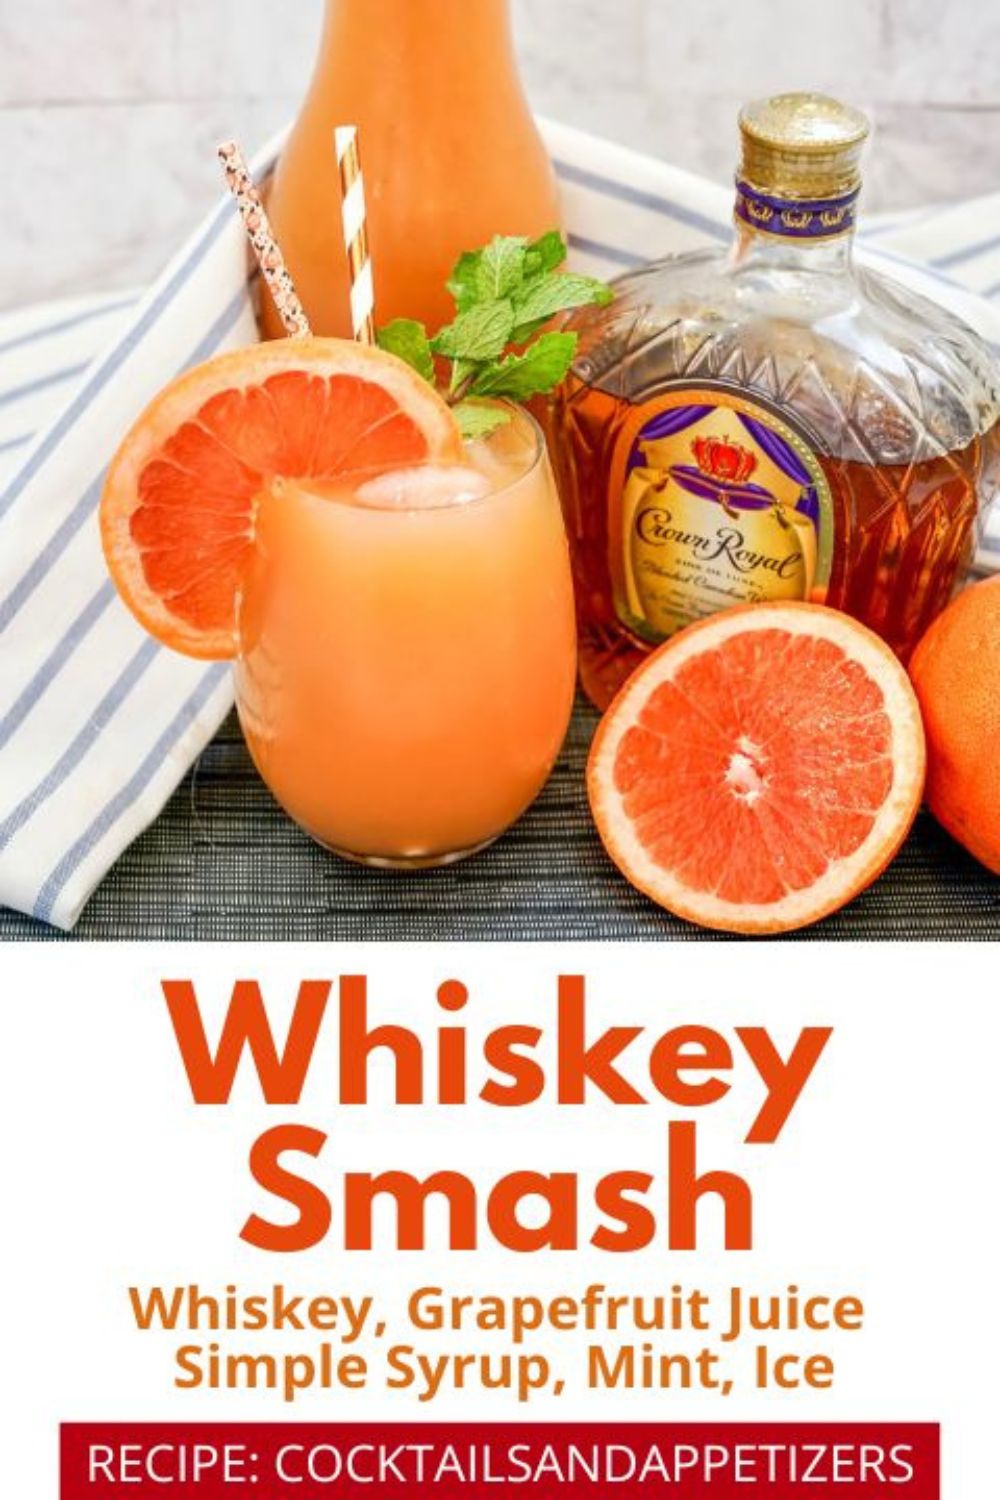 Grapefruit Whiskey Smash with fresh mint for garnish